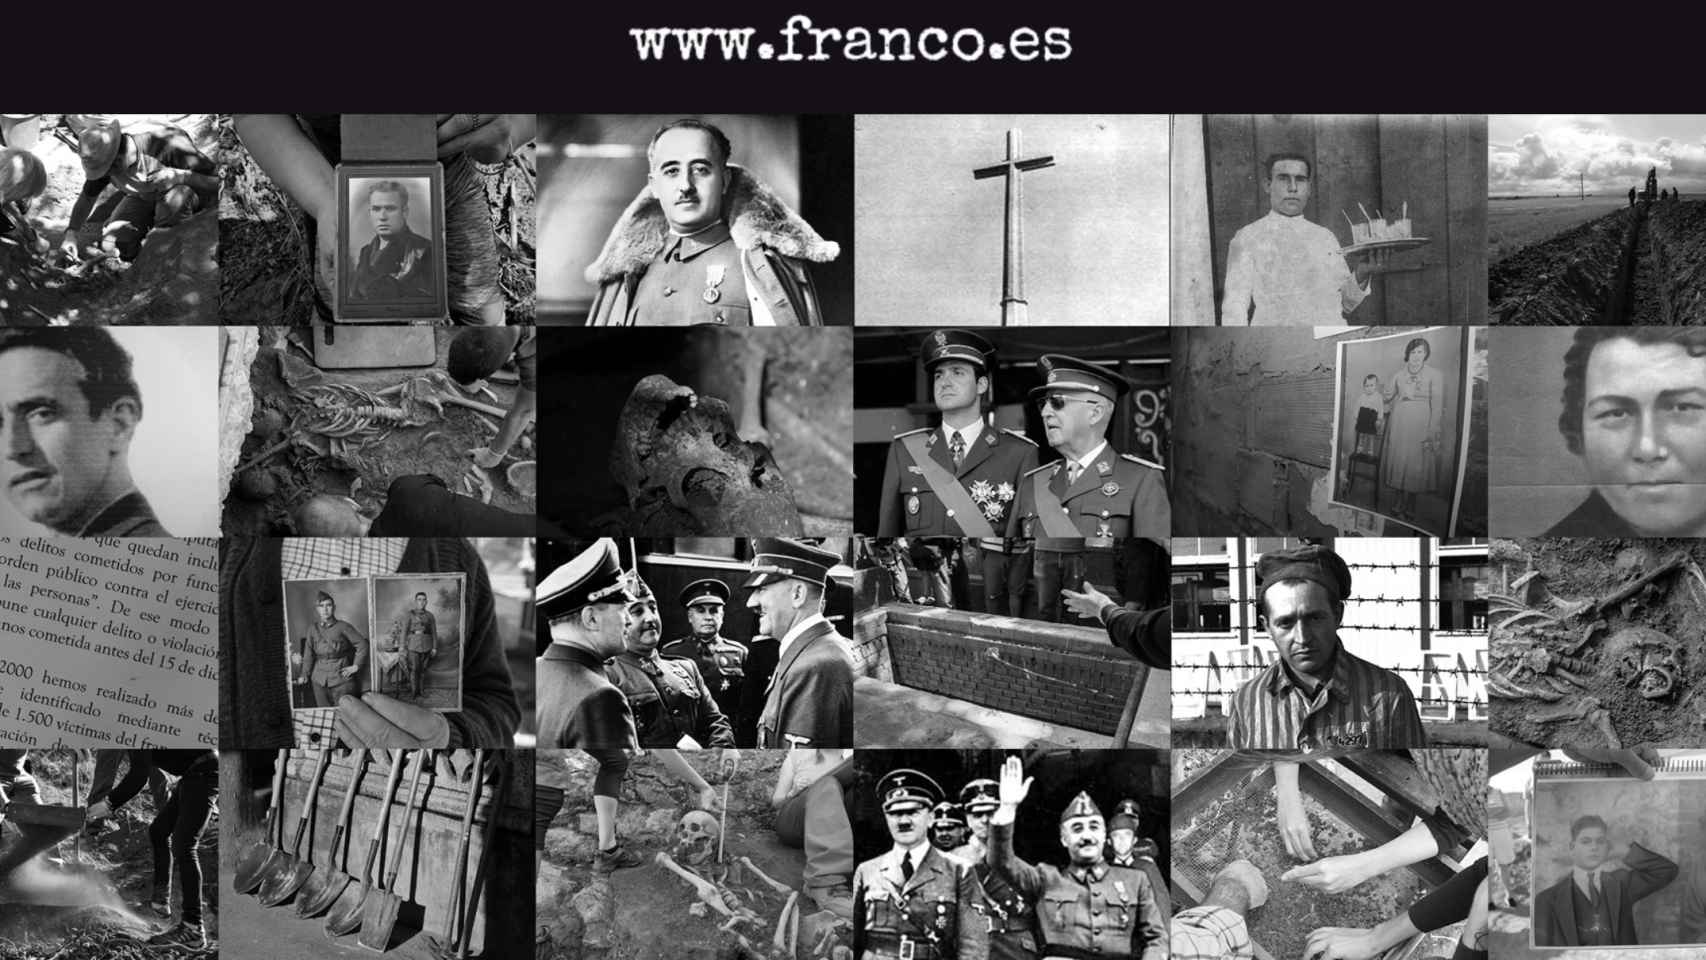 Fotografía de apertura de la página 'www.franco.es'.